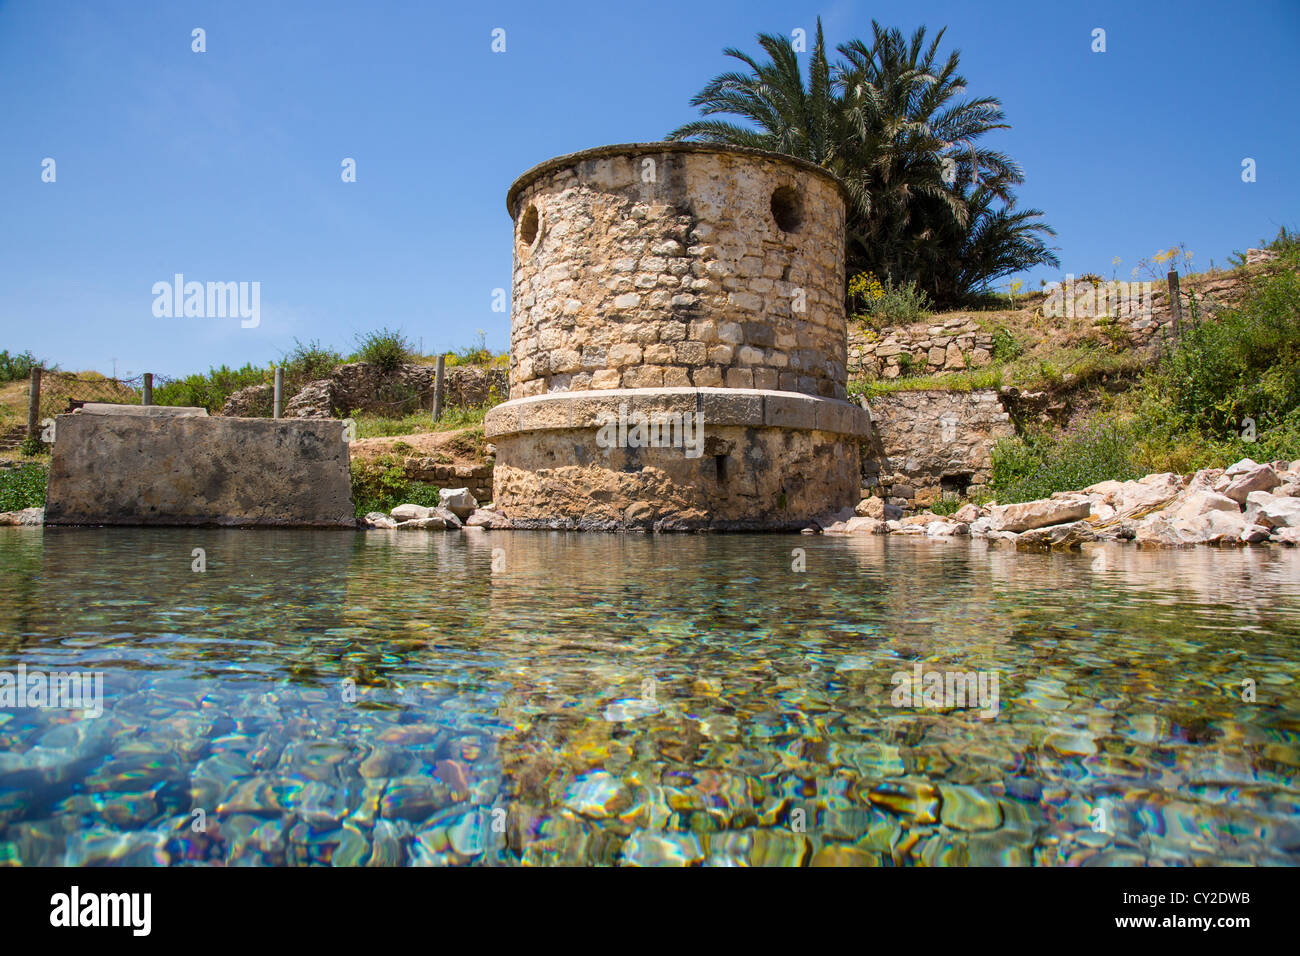 Primavera naturale presso le rovine Romane di Bulla Regia vicino a Jendouba Tunisia Foto Stock